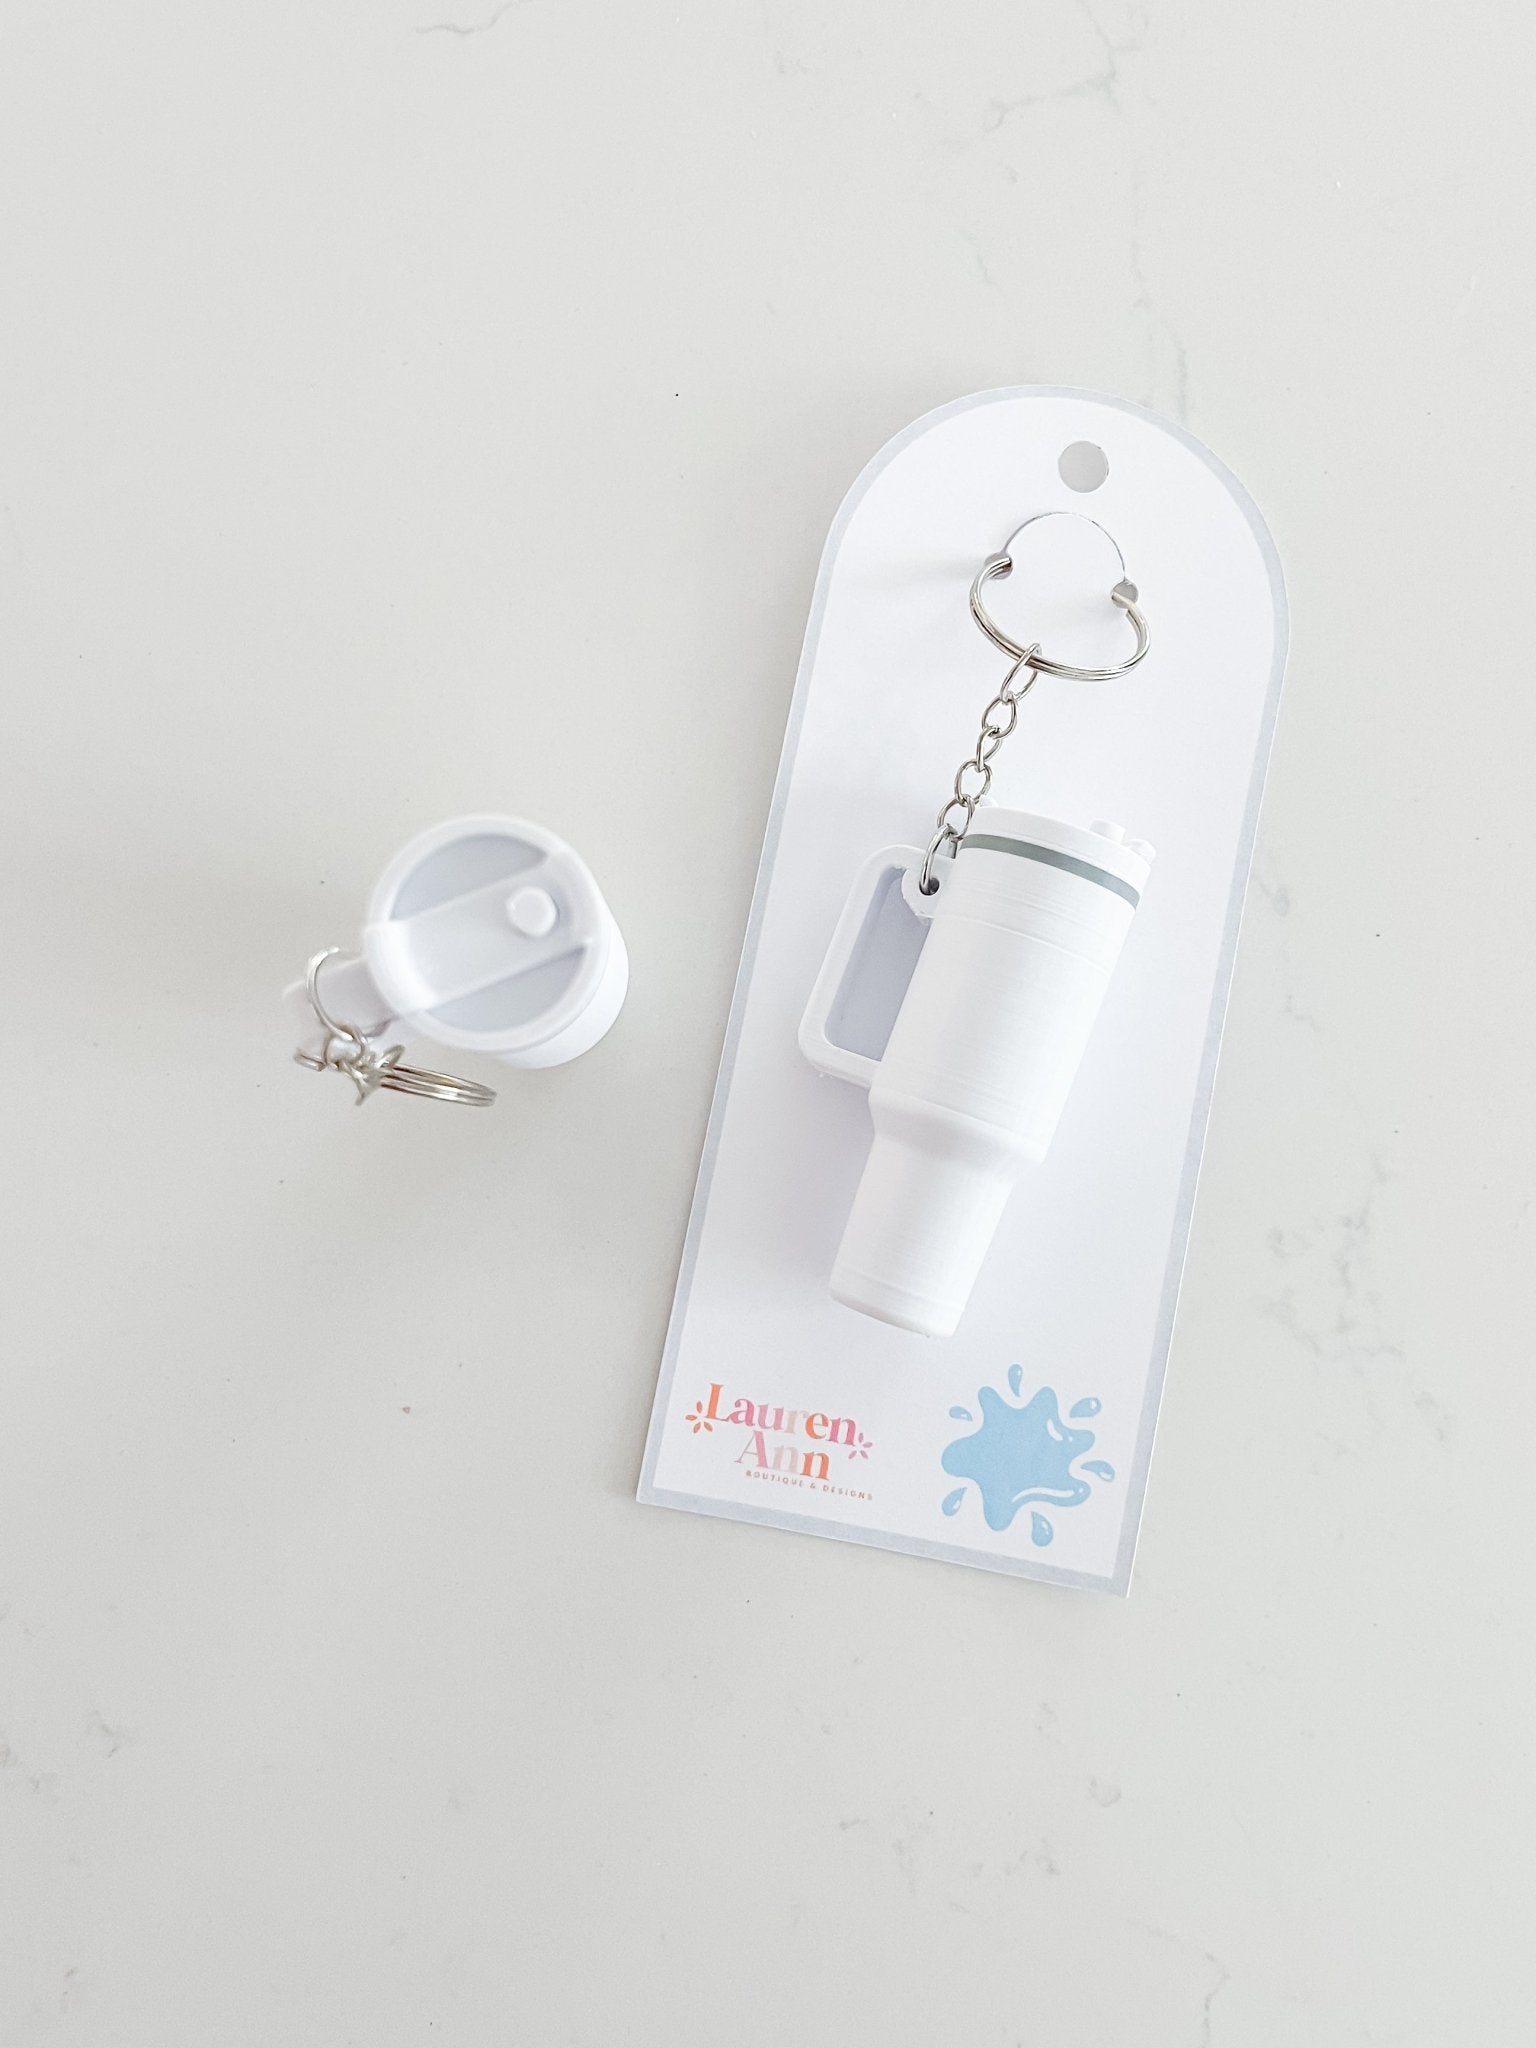 Stanley Tumbler Inspired Keychain - Designs by Lauren Ann